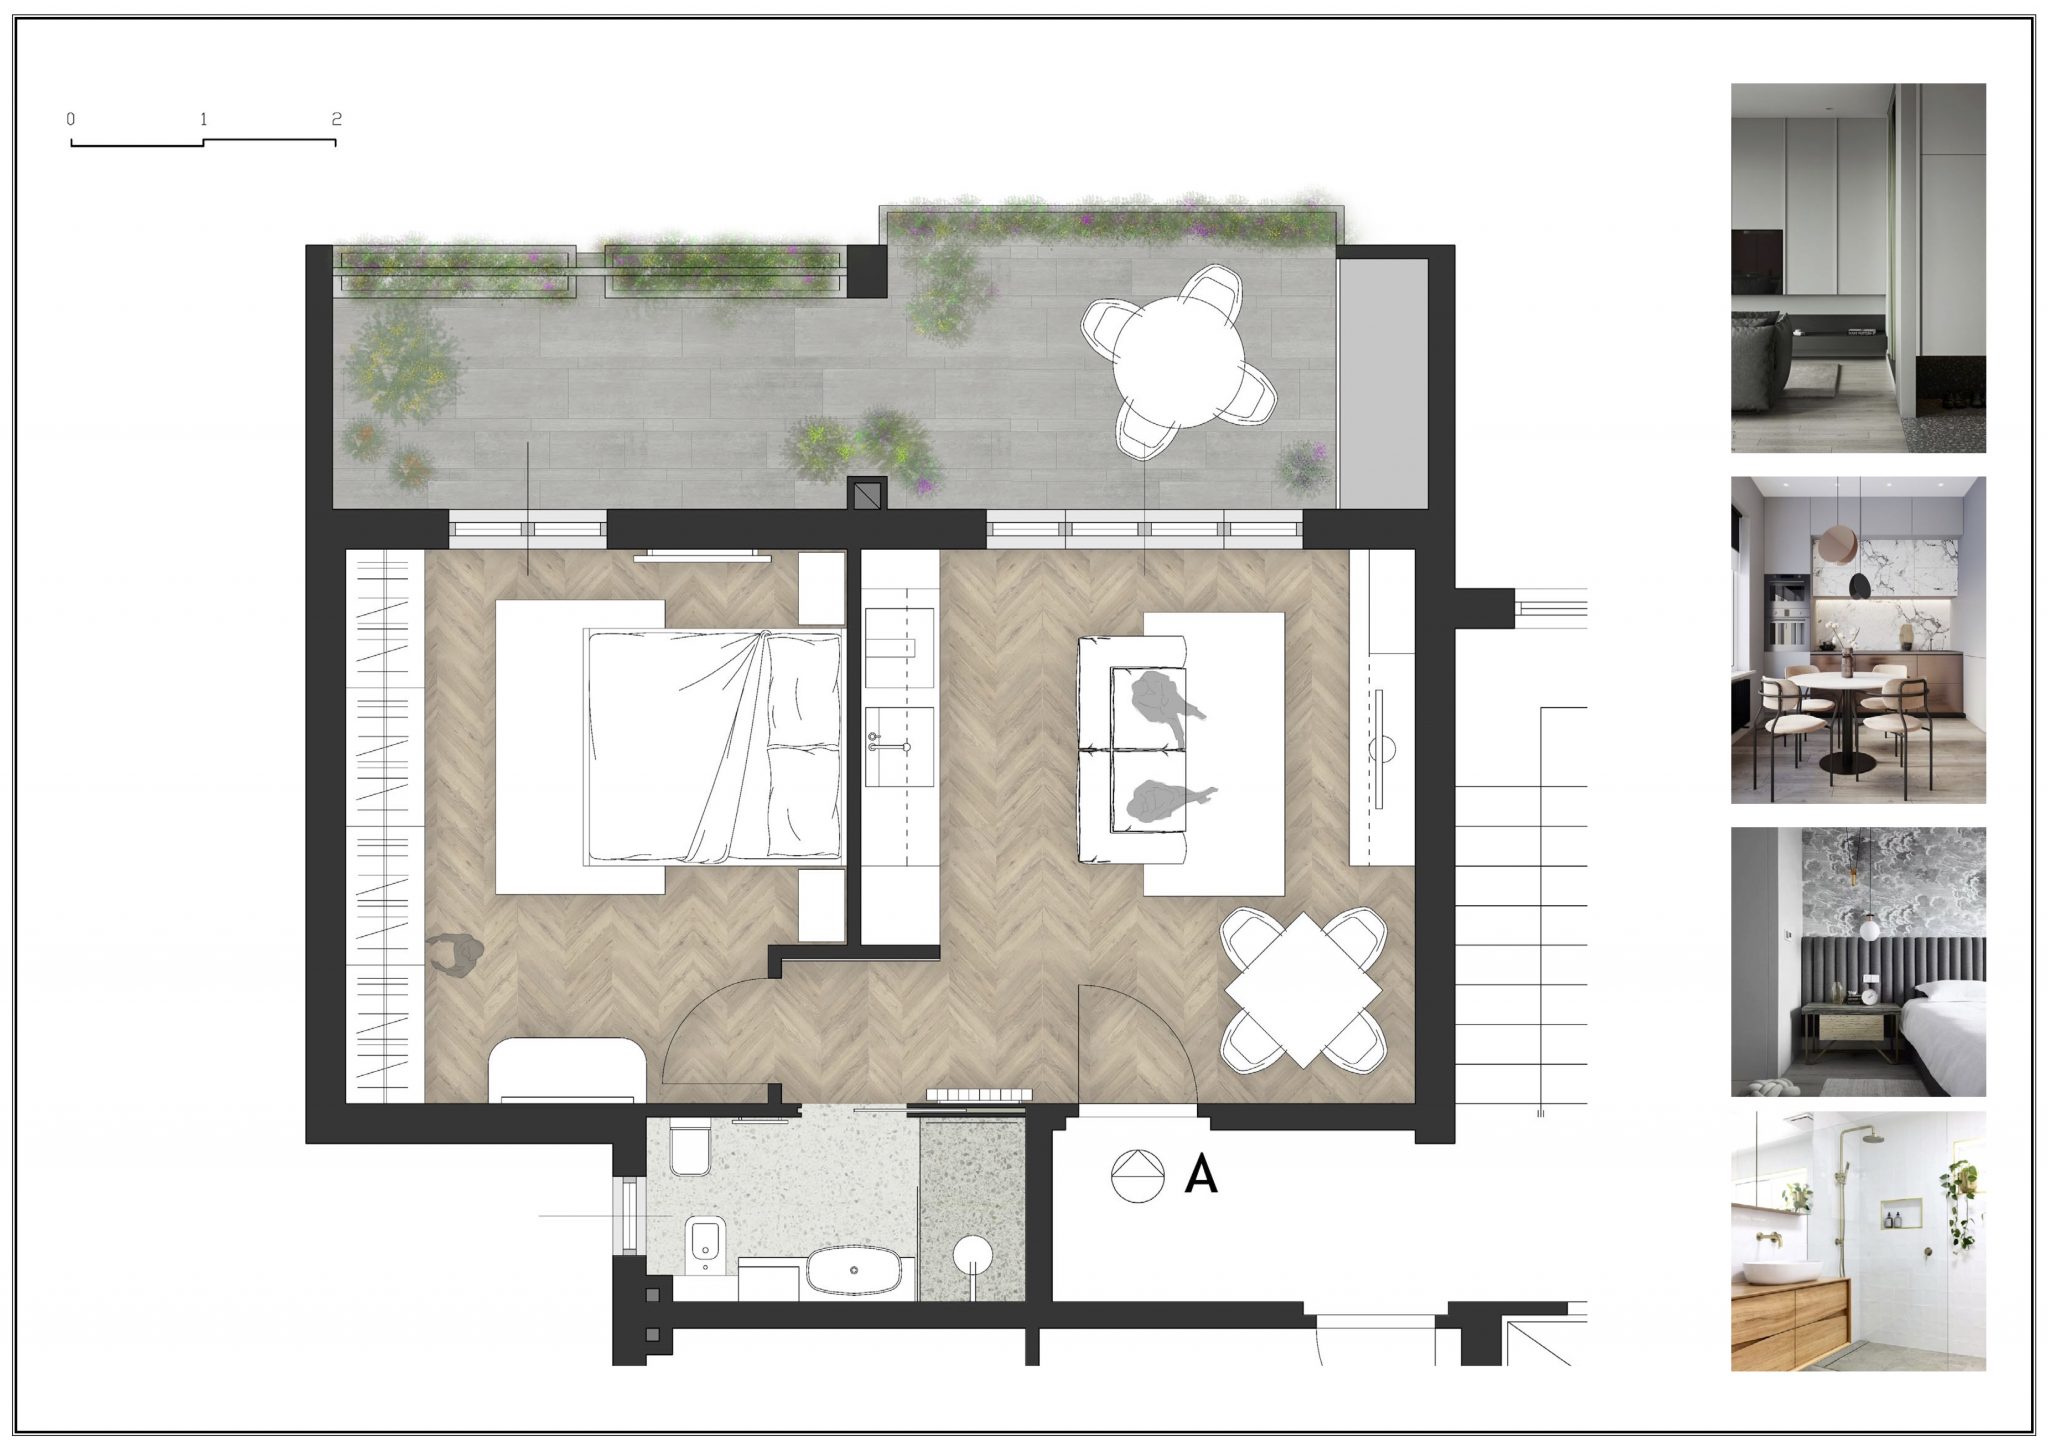 Grundriss und Darstellung einer 59 qm Wohnung mit Terrasse, die über den gesamten Wohnbereich zugänglich ist. Großzügig geschnittenes Schlafzimmer, welches man über den Wohn-Essbereich begeht. Im Wohn-Essbereich befindet sich eine offene Küchenzeile.